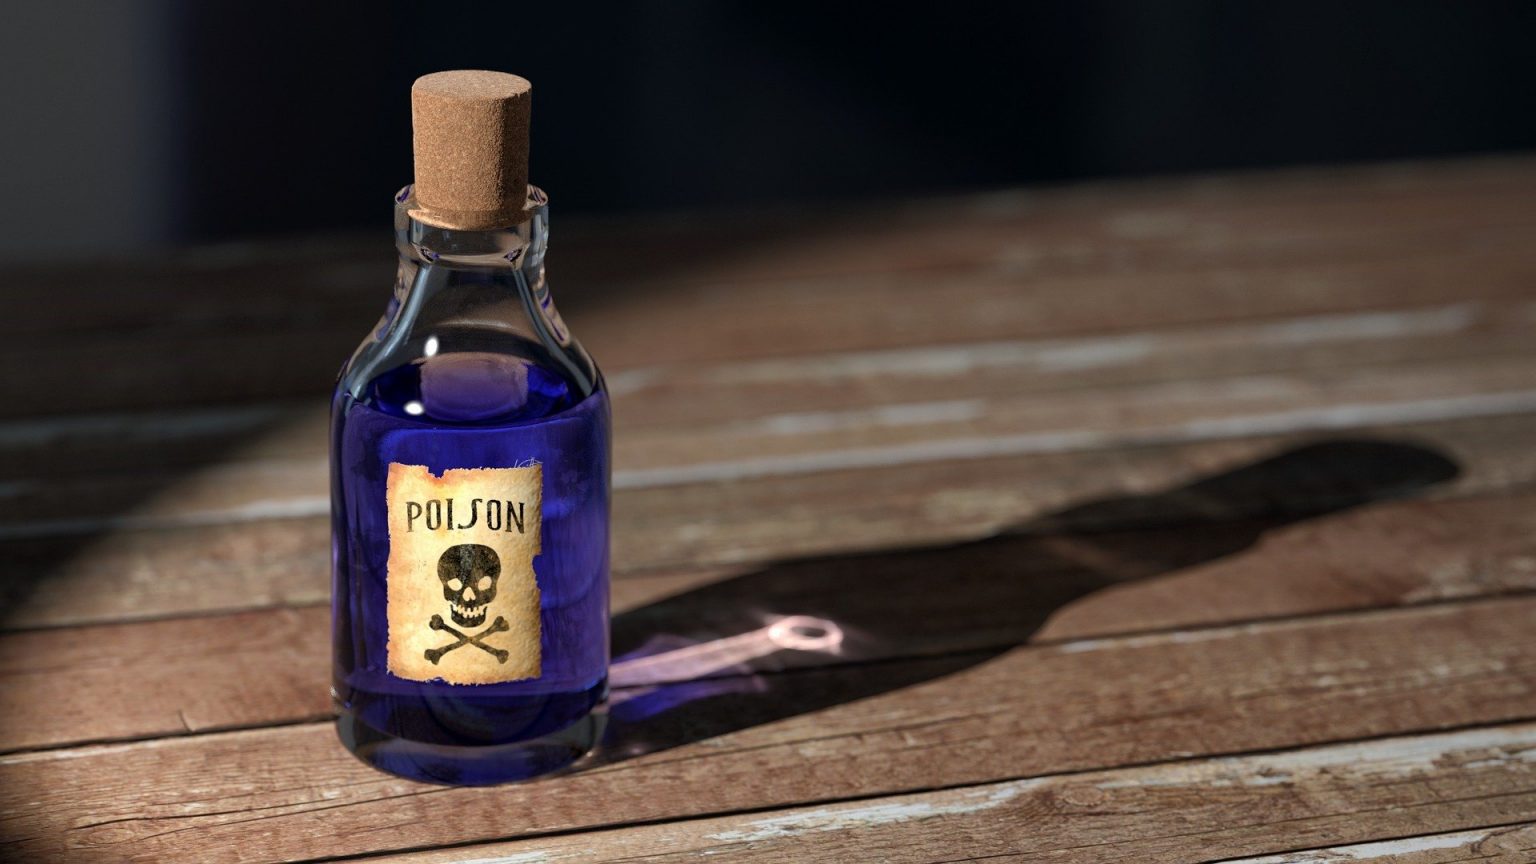 curare poison antidote